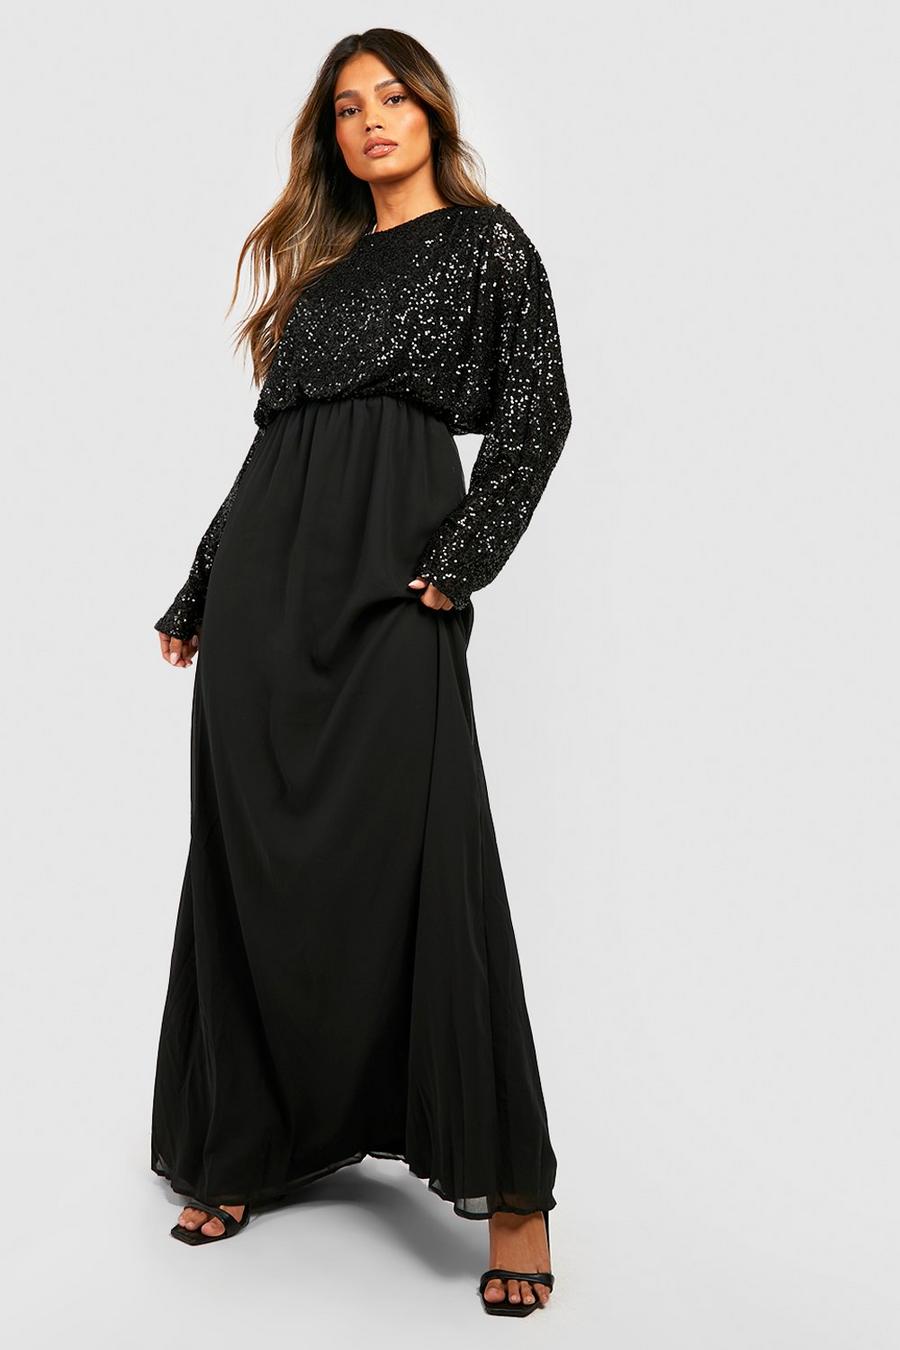 שחור nero שמלת שושבינות מקסי עם שרוולי עטלף ופייטים